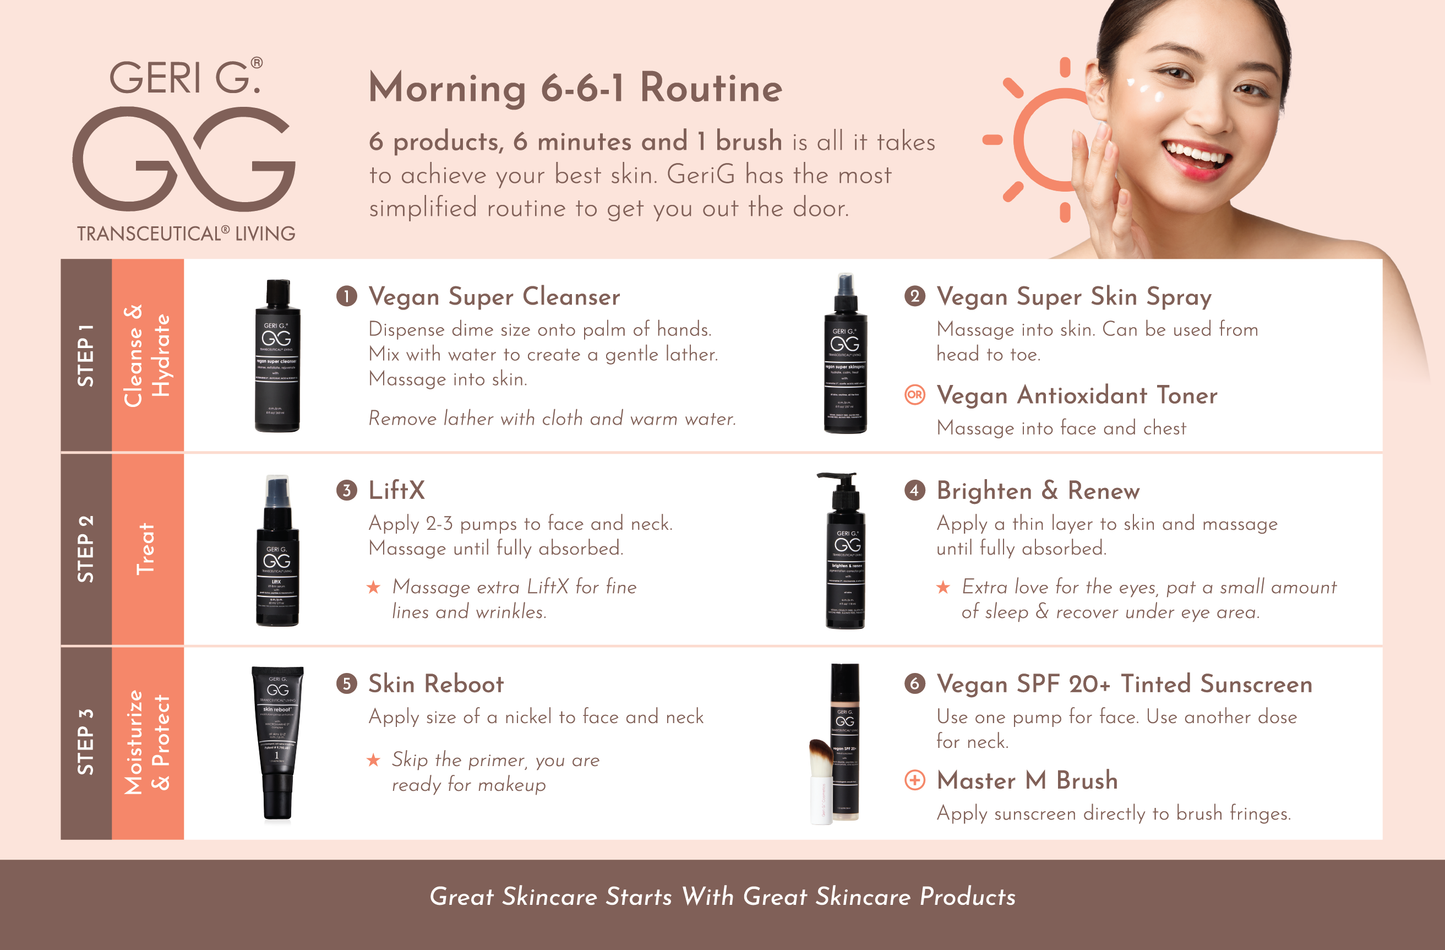 Vegan Super Skinspray  for Face and Body 8 oz